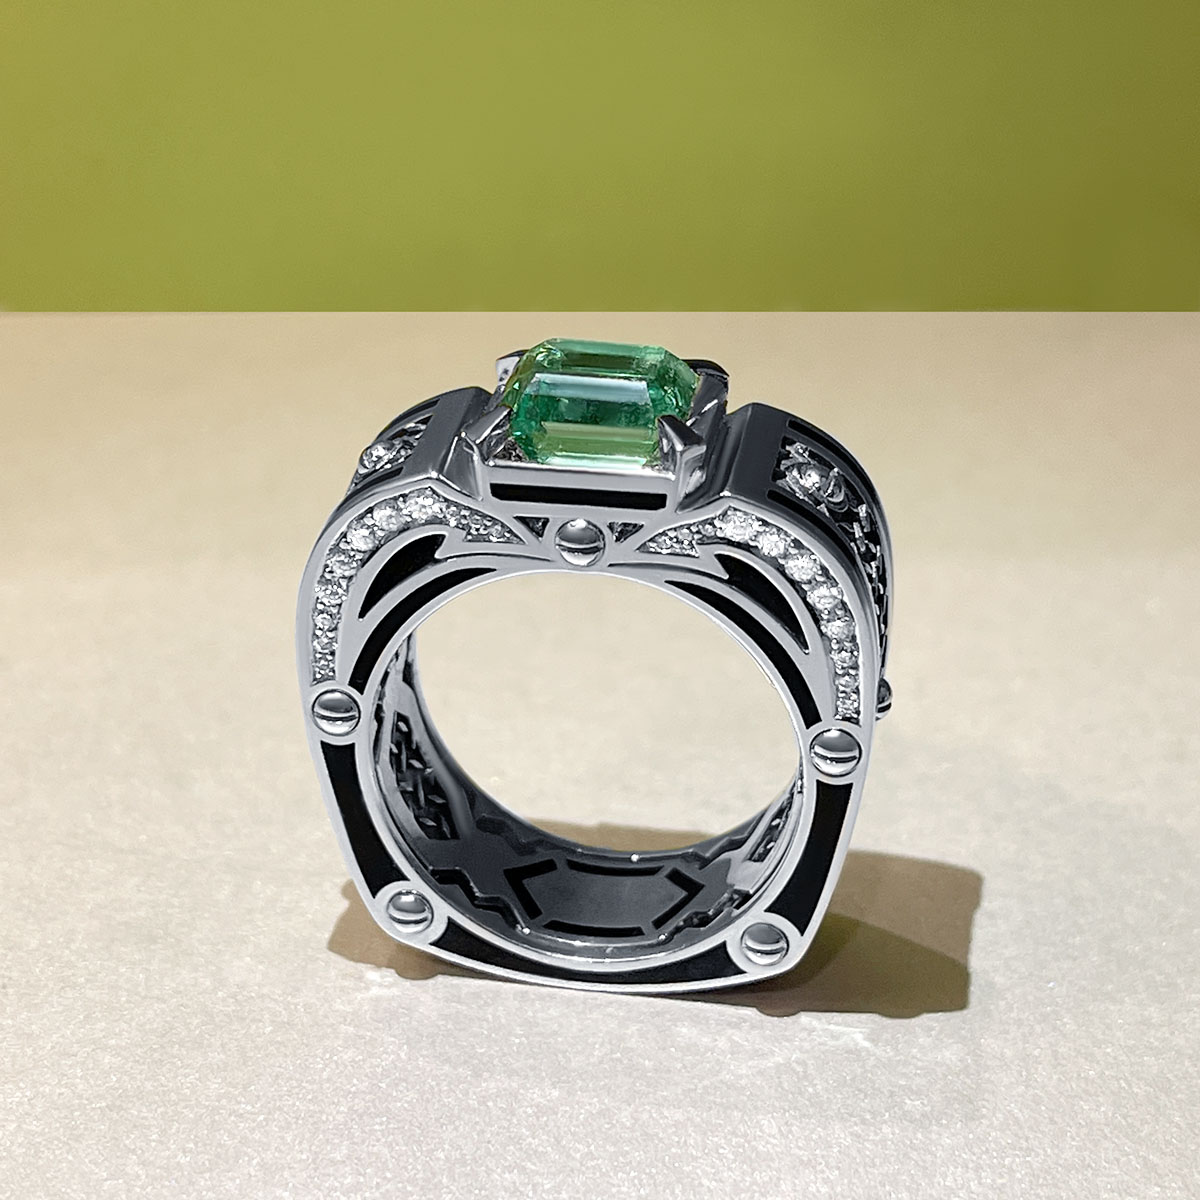 Мужское кольцо с изумрудом, керамикой, бриллиантами из белого золота 750 пробы, фото № 3